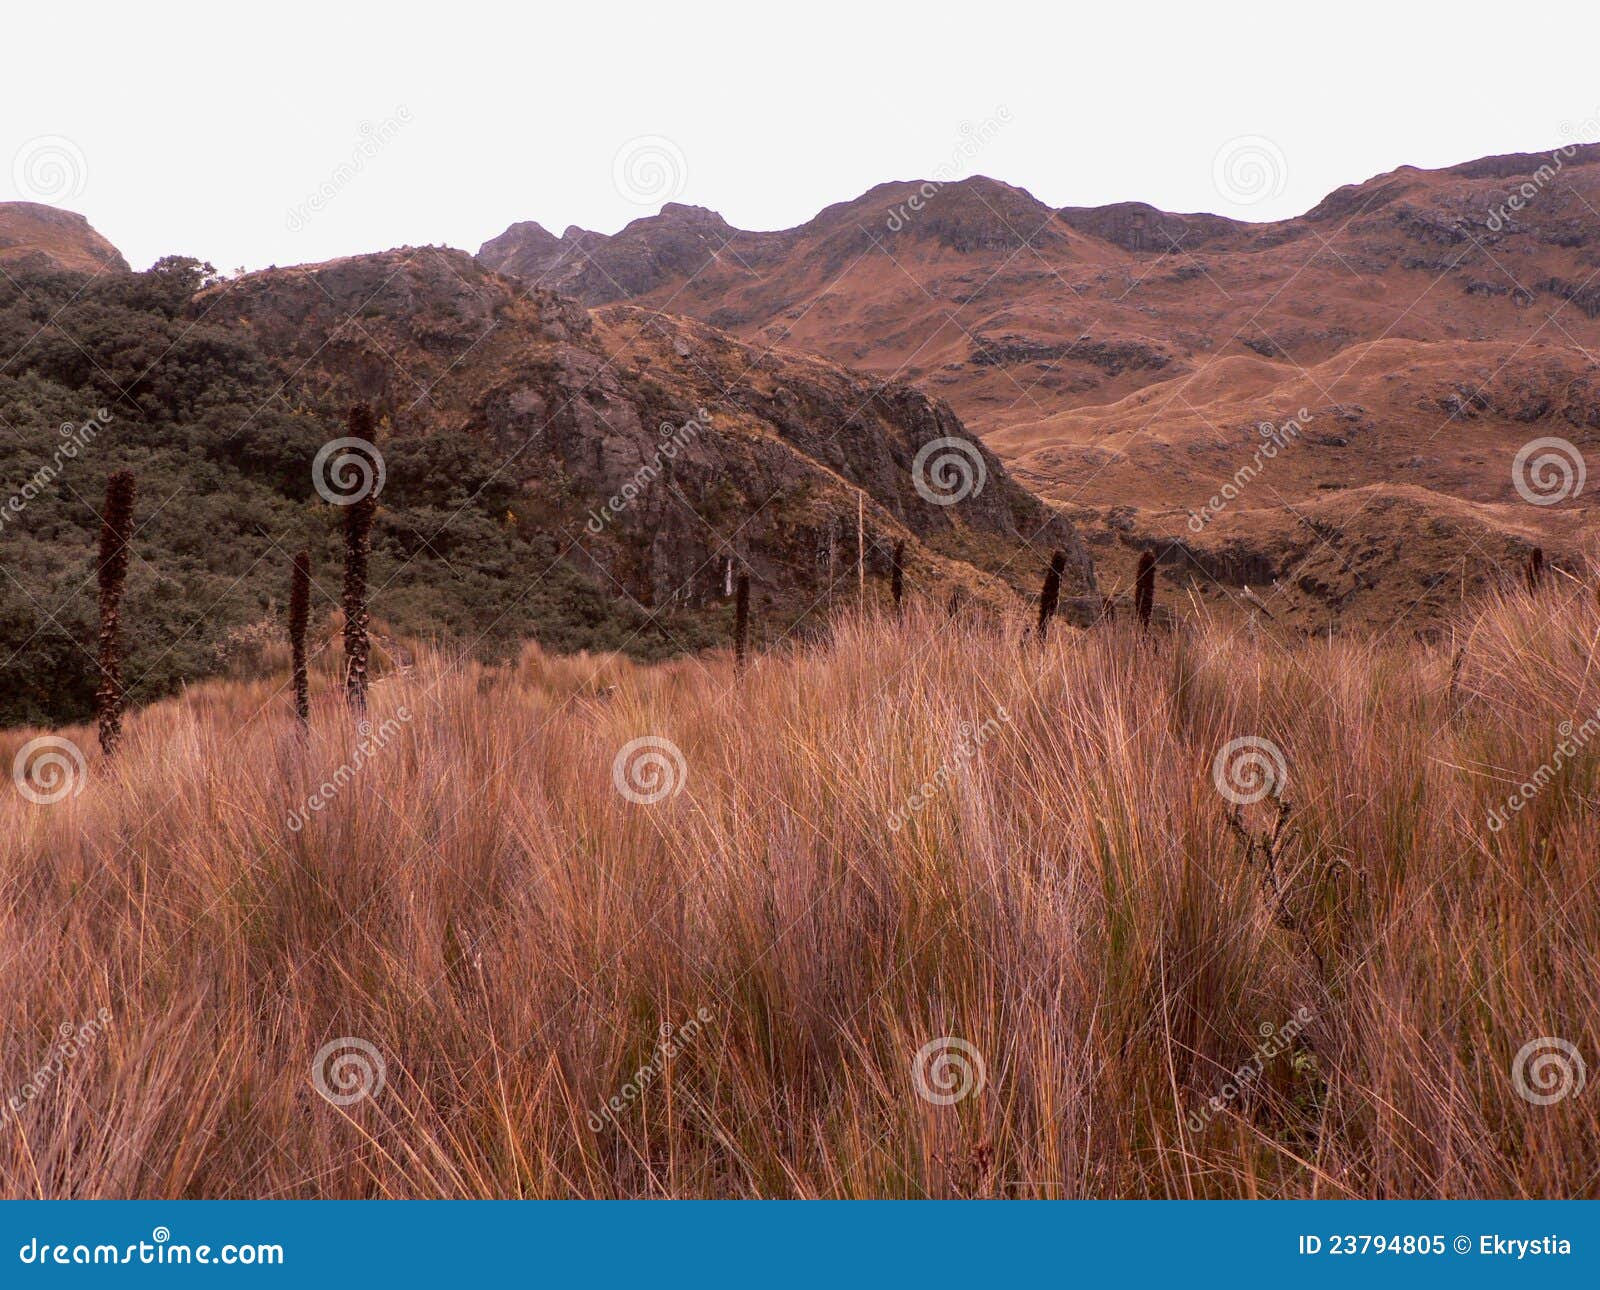 national park cajas, ecuador